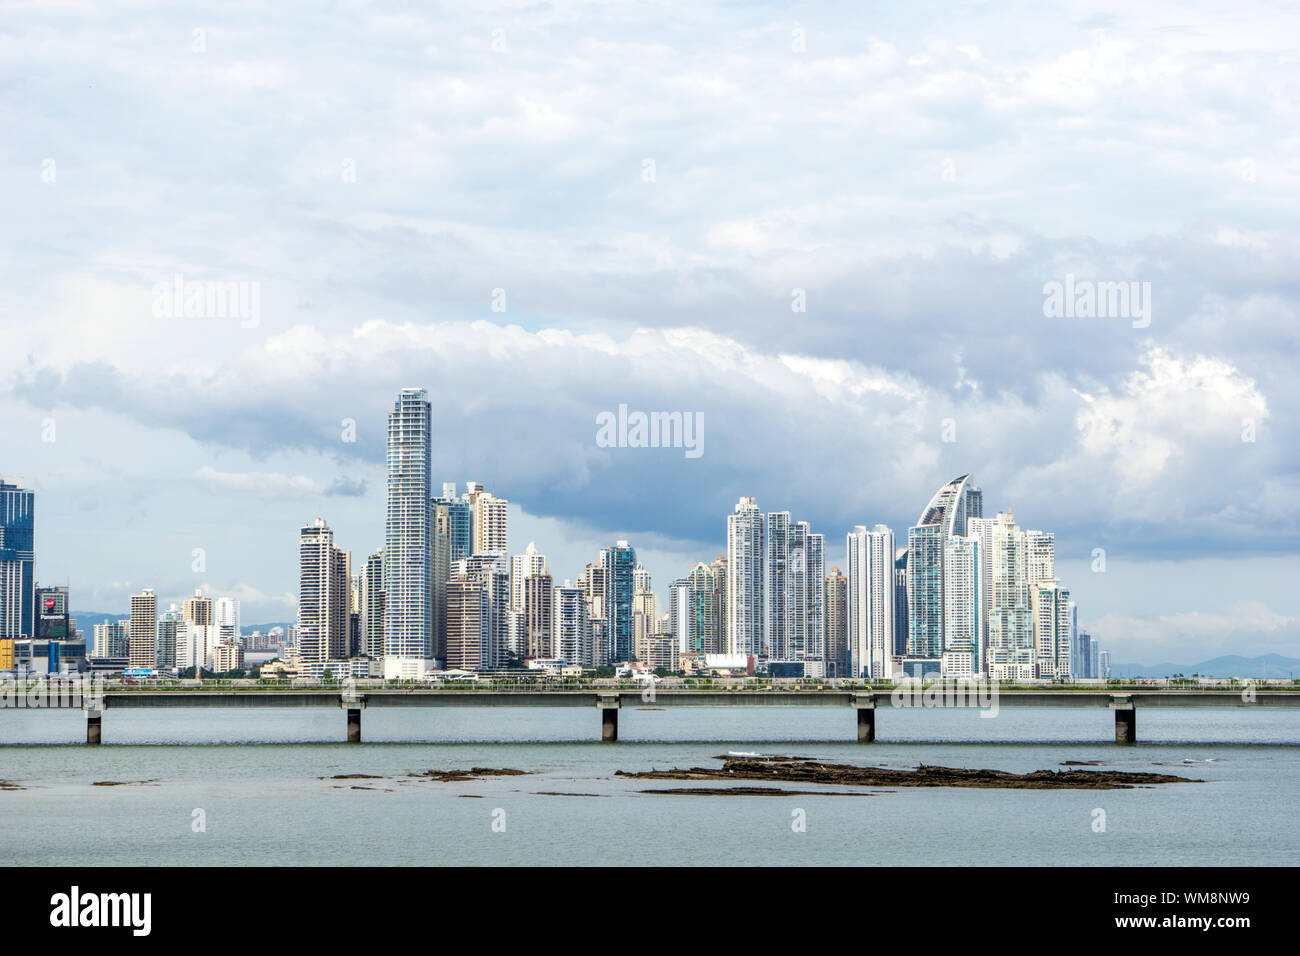 Panama City, Panama Skyline from across the bay Stock Photo